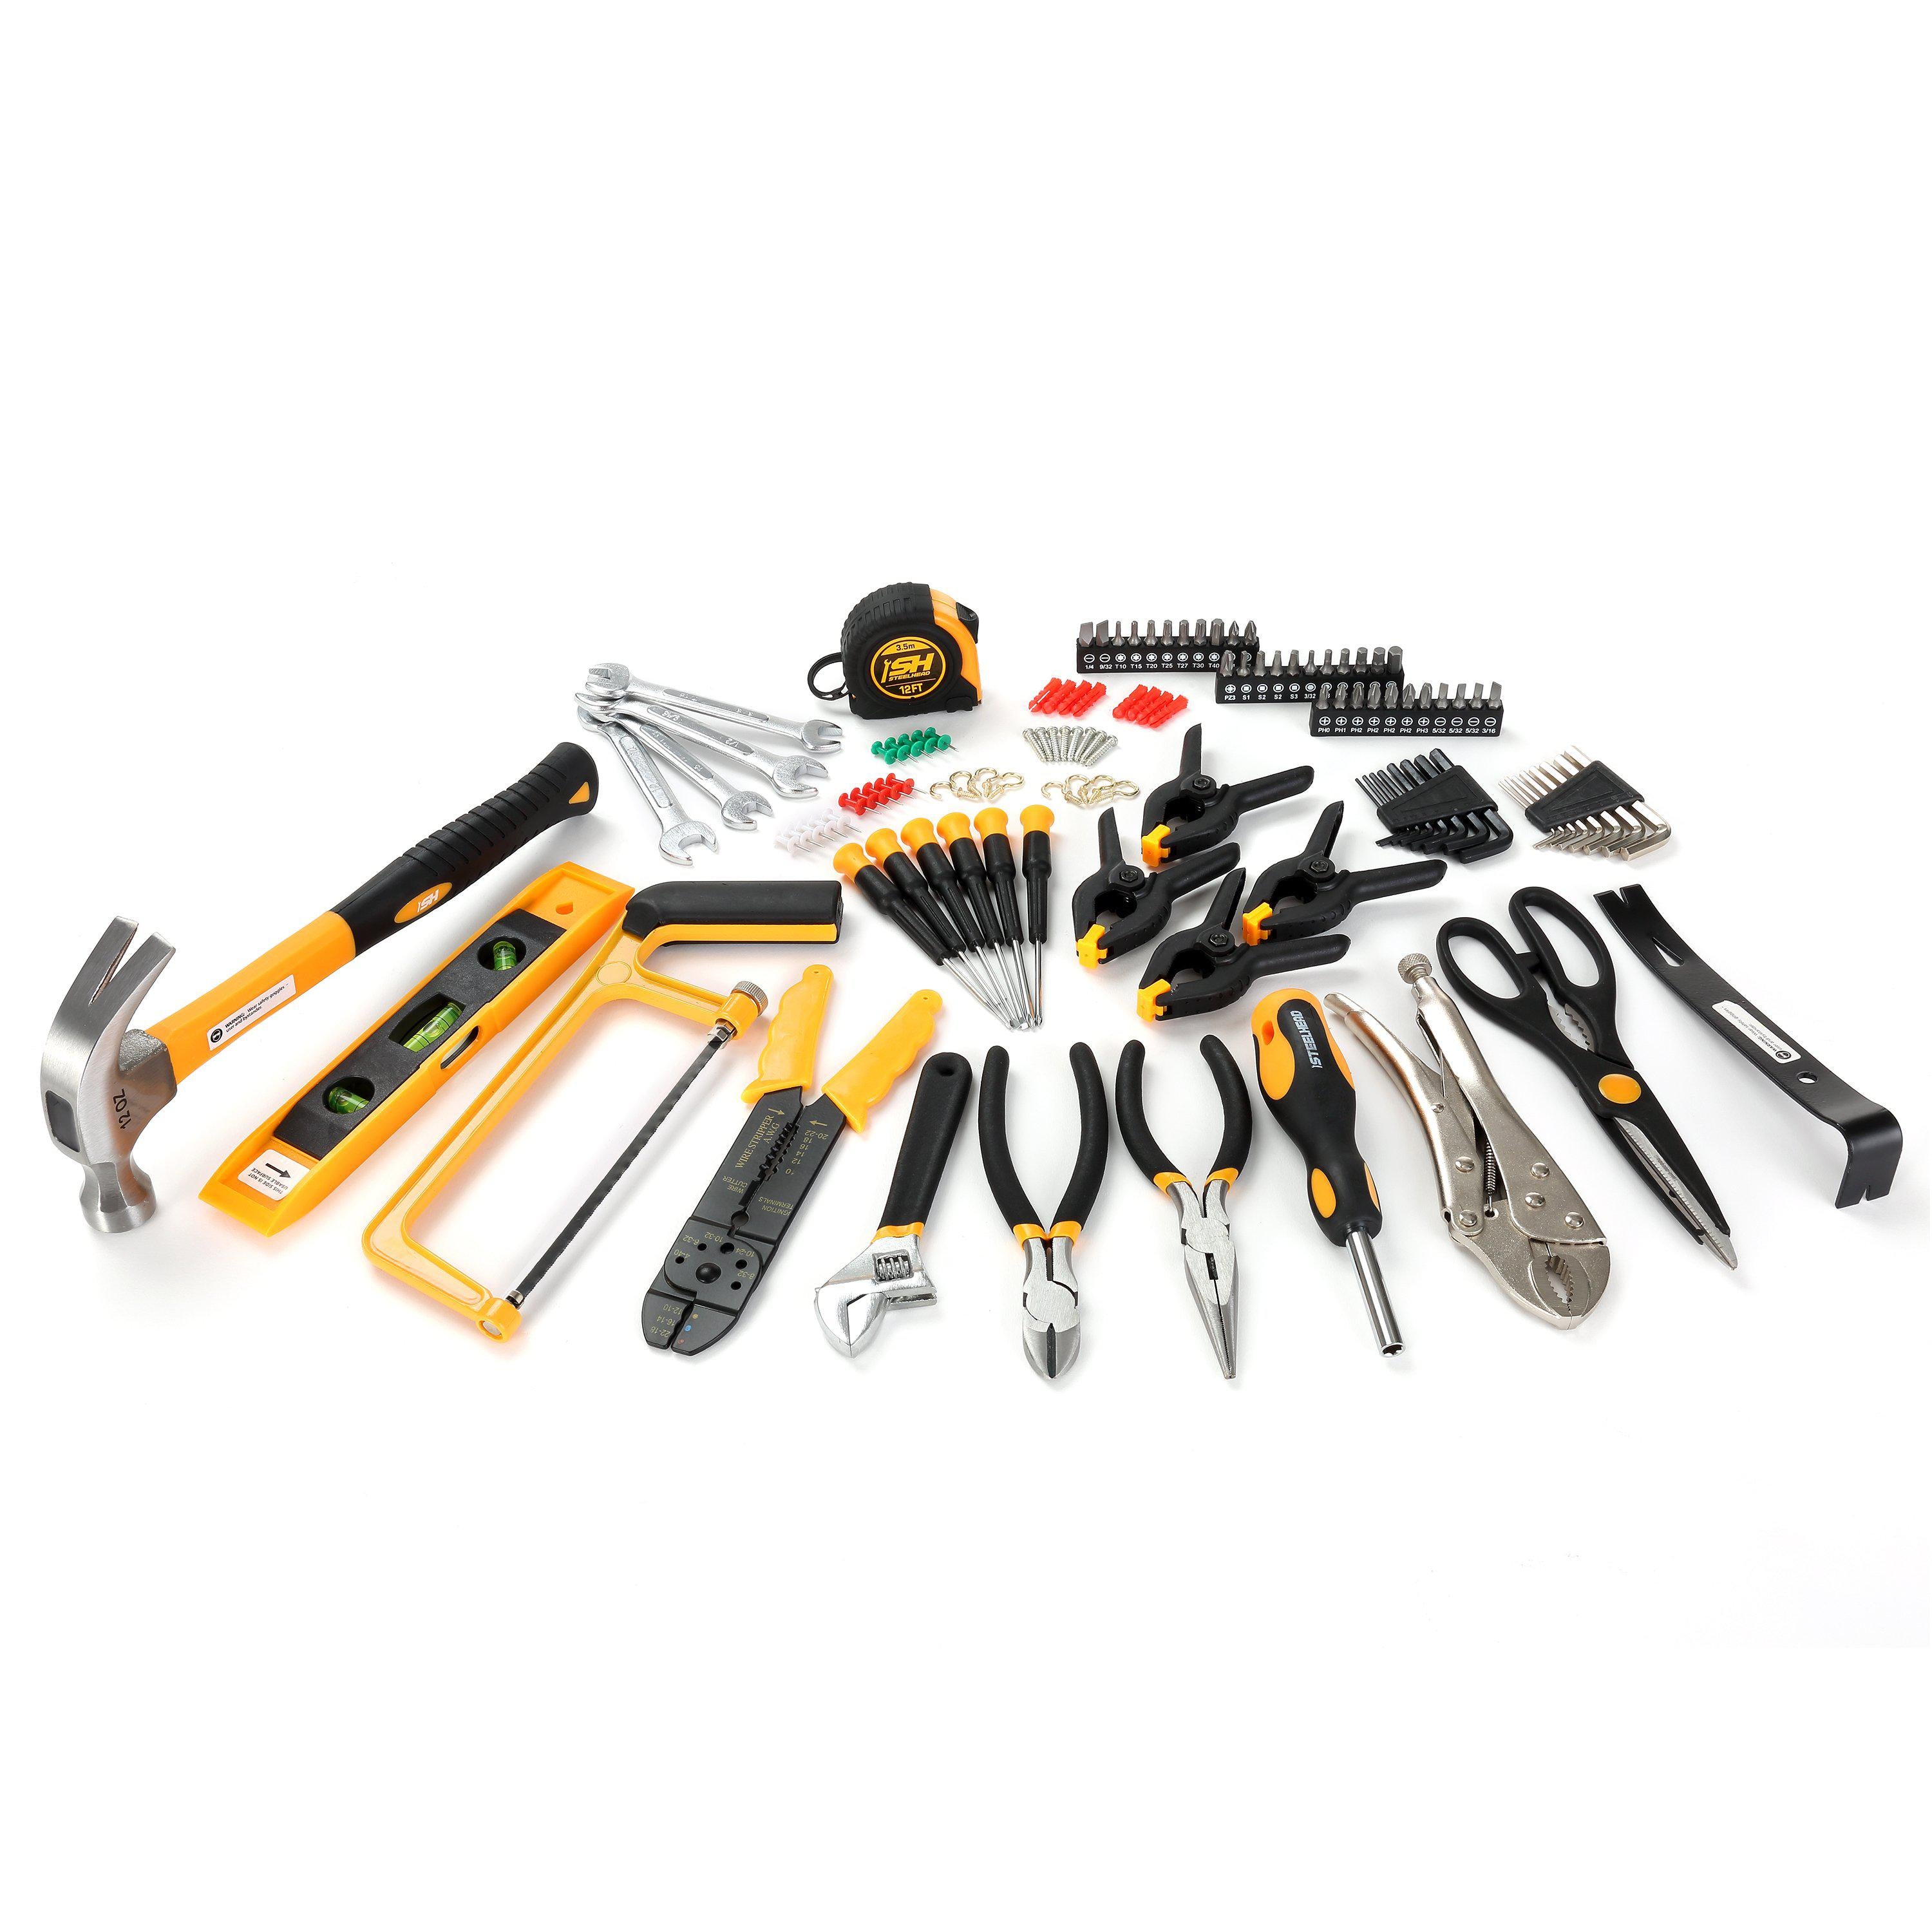 Home Tool Set (117 Piece)-Motorhead & Steelhead Tools